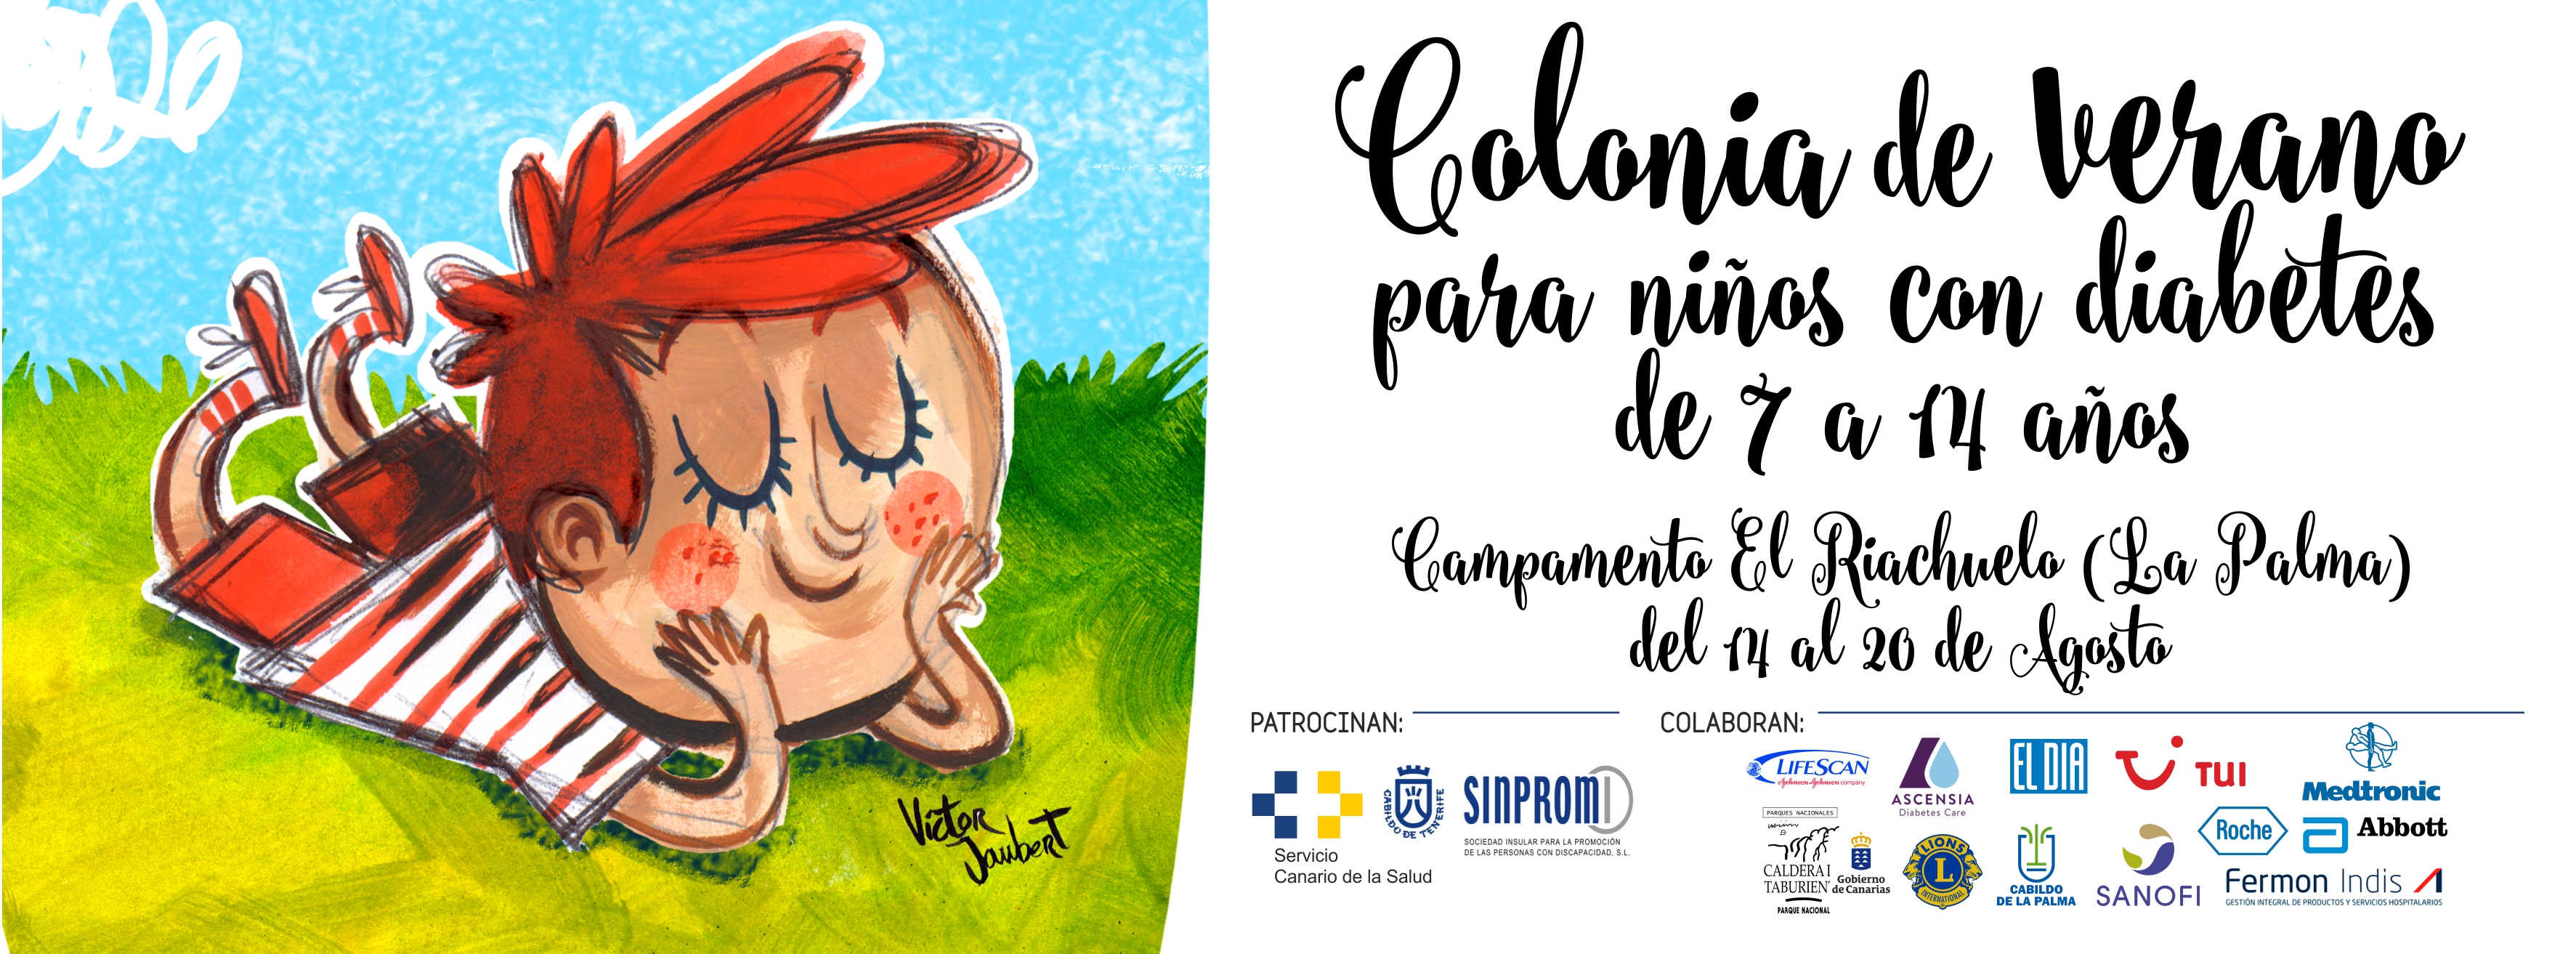 Treinta y cinco niños de Tenerife, La Palma y La Gomera disfrutarán de la Colonia de verano para niños con diabetes de ADT